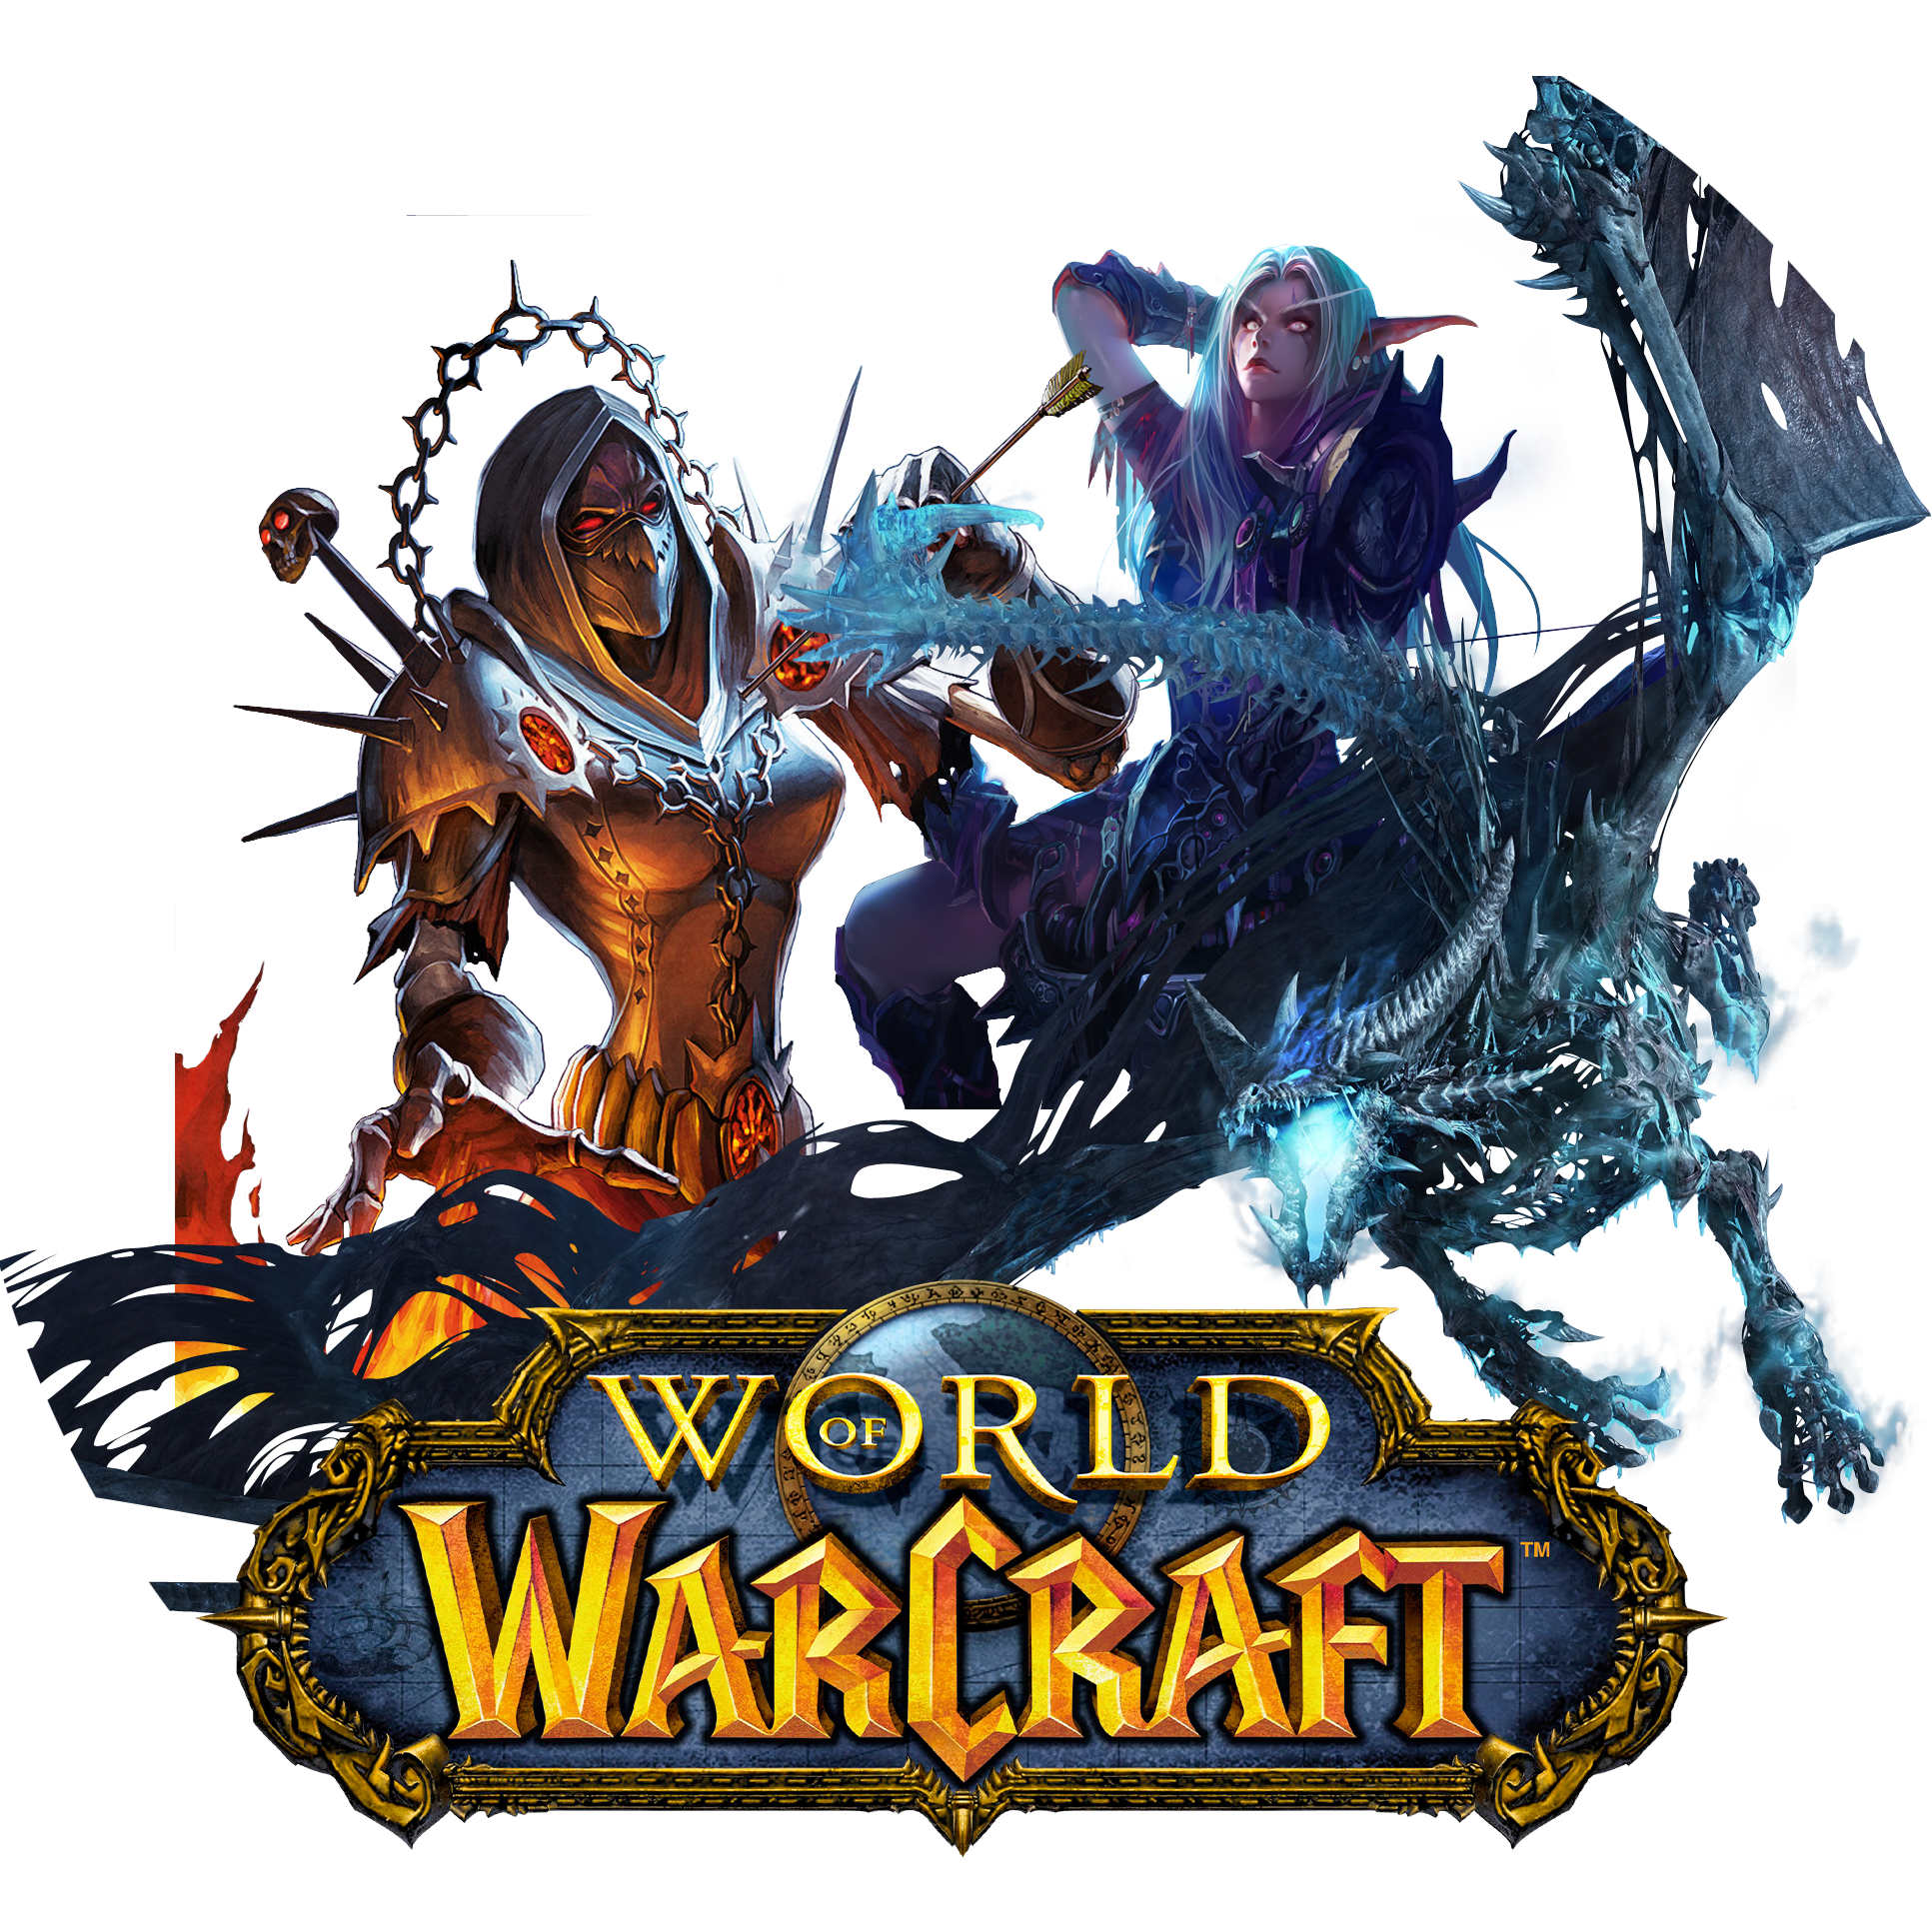 Варкрафт значок. Ярлык World of Warcraft. Ворлд оф варкрафт иконка. Значки World of Warcraft .ICO. Warcraft icons